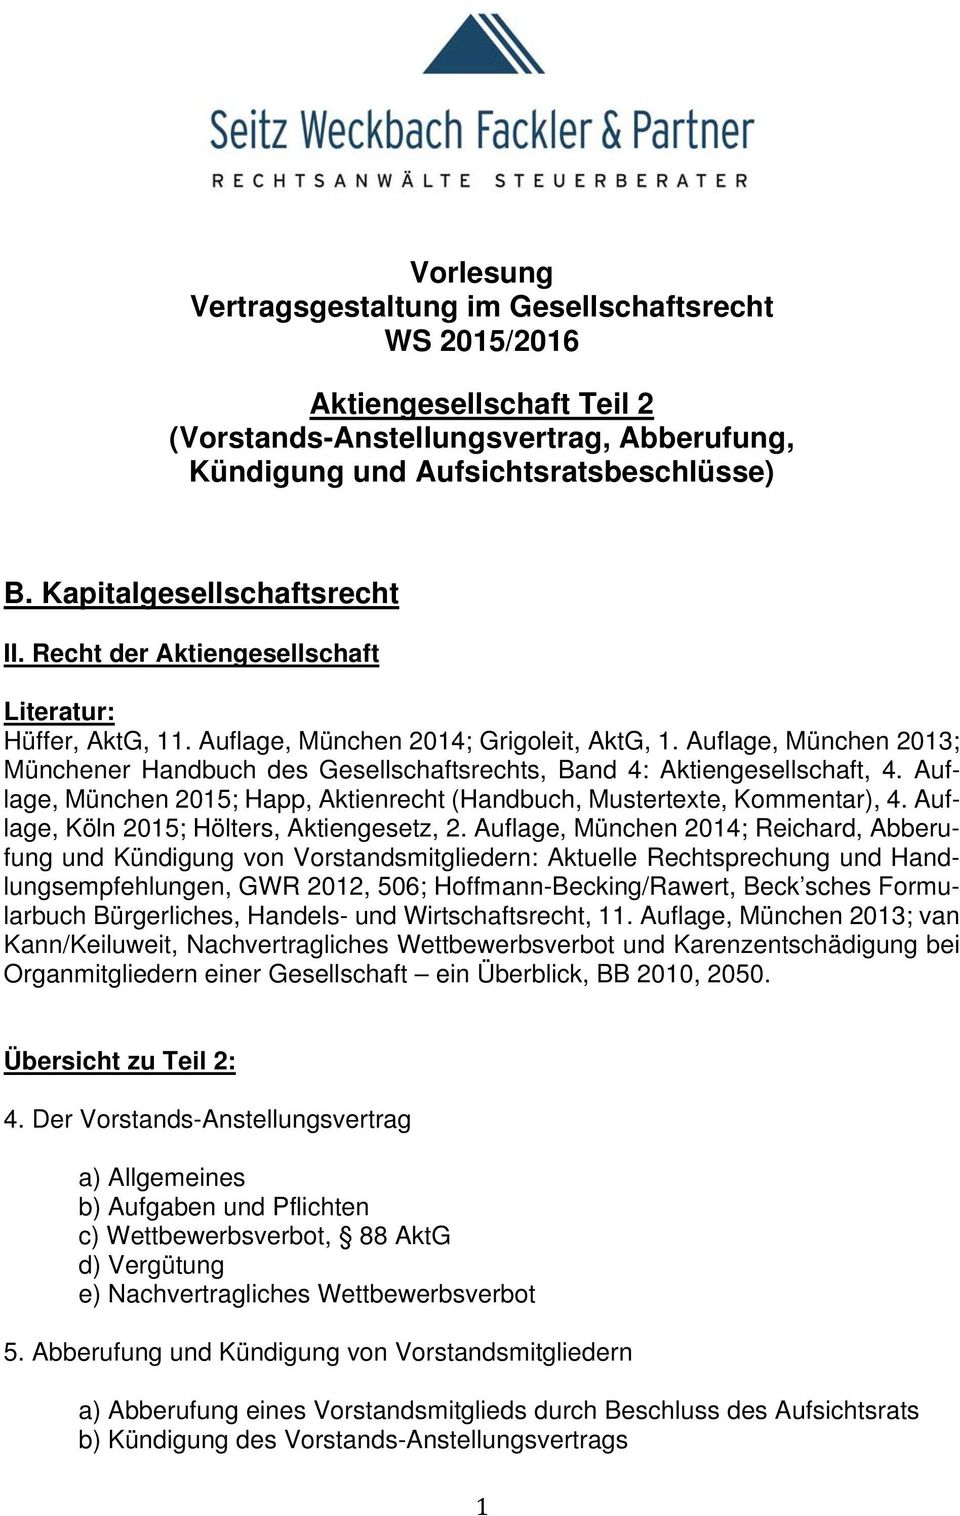 Auflage, München 2013; Münchener Handbuch des Gesellschaftsrechts, Band 4: Aktiengesellschaft, 4. Auflage, München 2015; Happ, Aktienrecht (Handbuch, Mustertexte, Kommentar), 4.